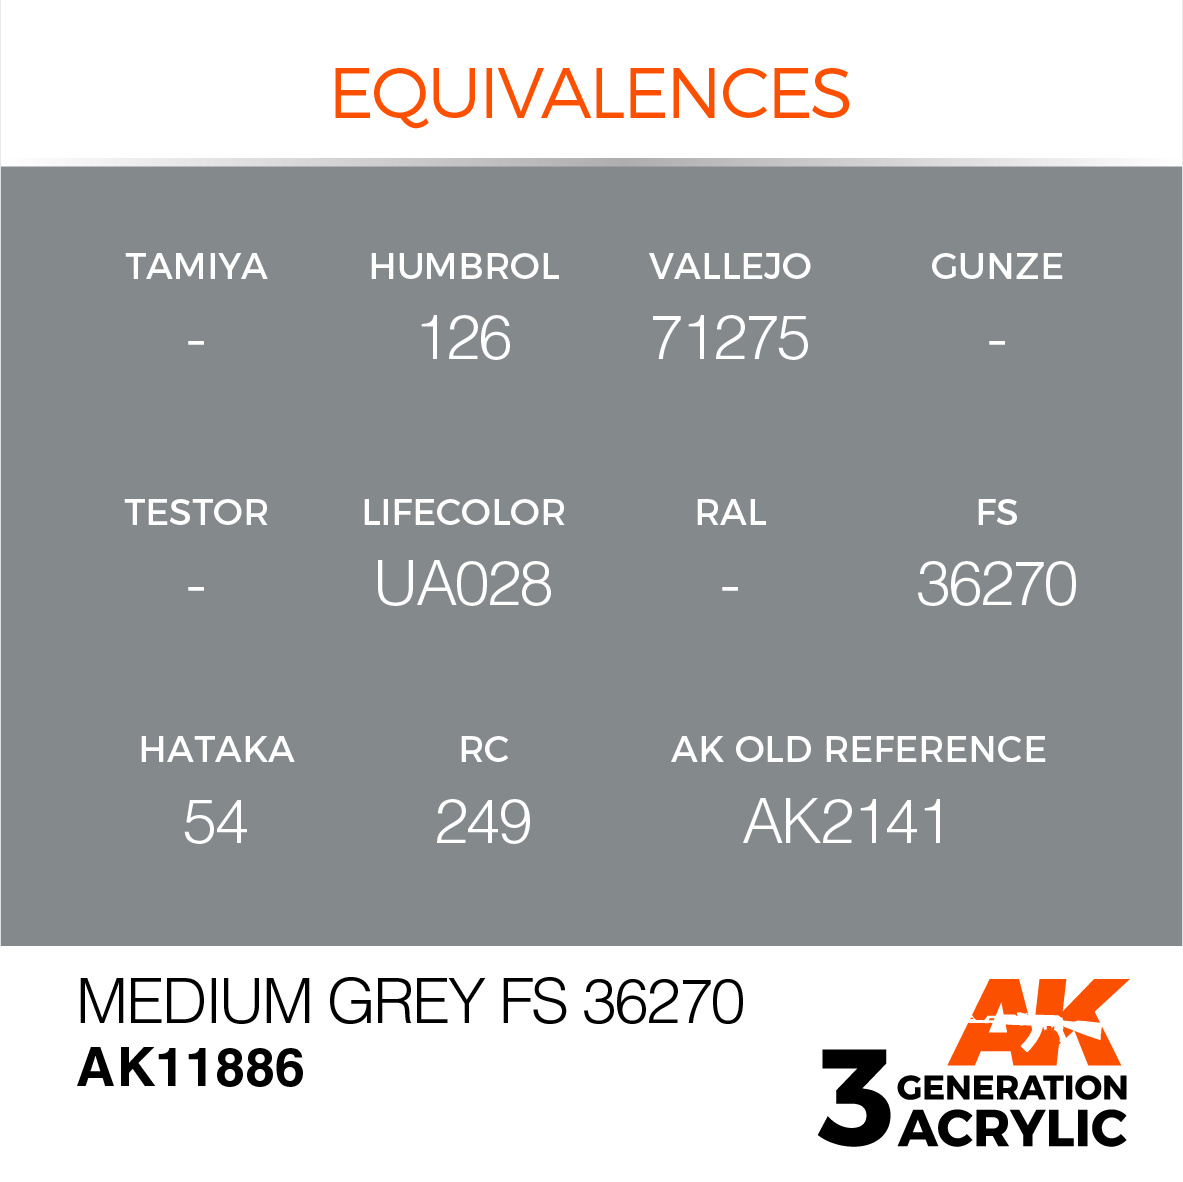 AK-Interactive Medium Grey FS 36270 - 17ml - AK-Interactive - AK-11886